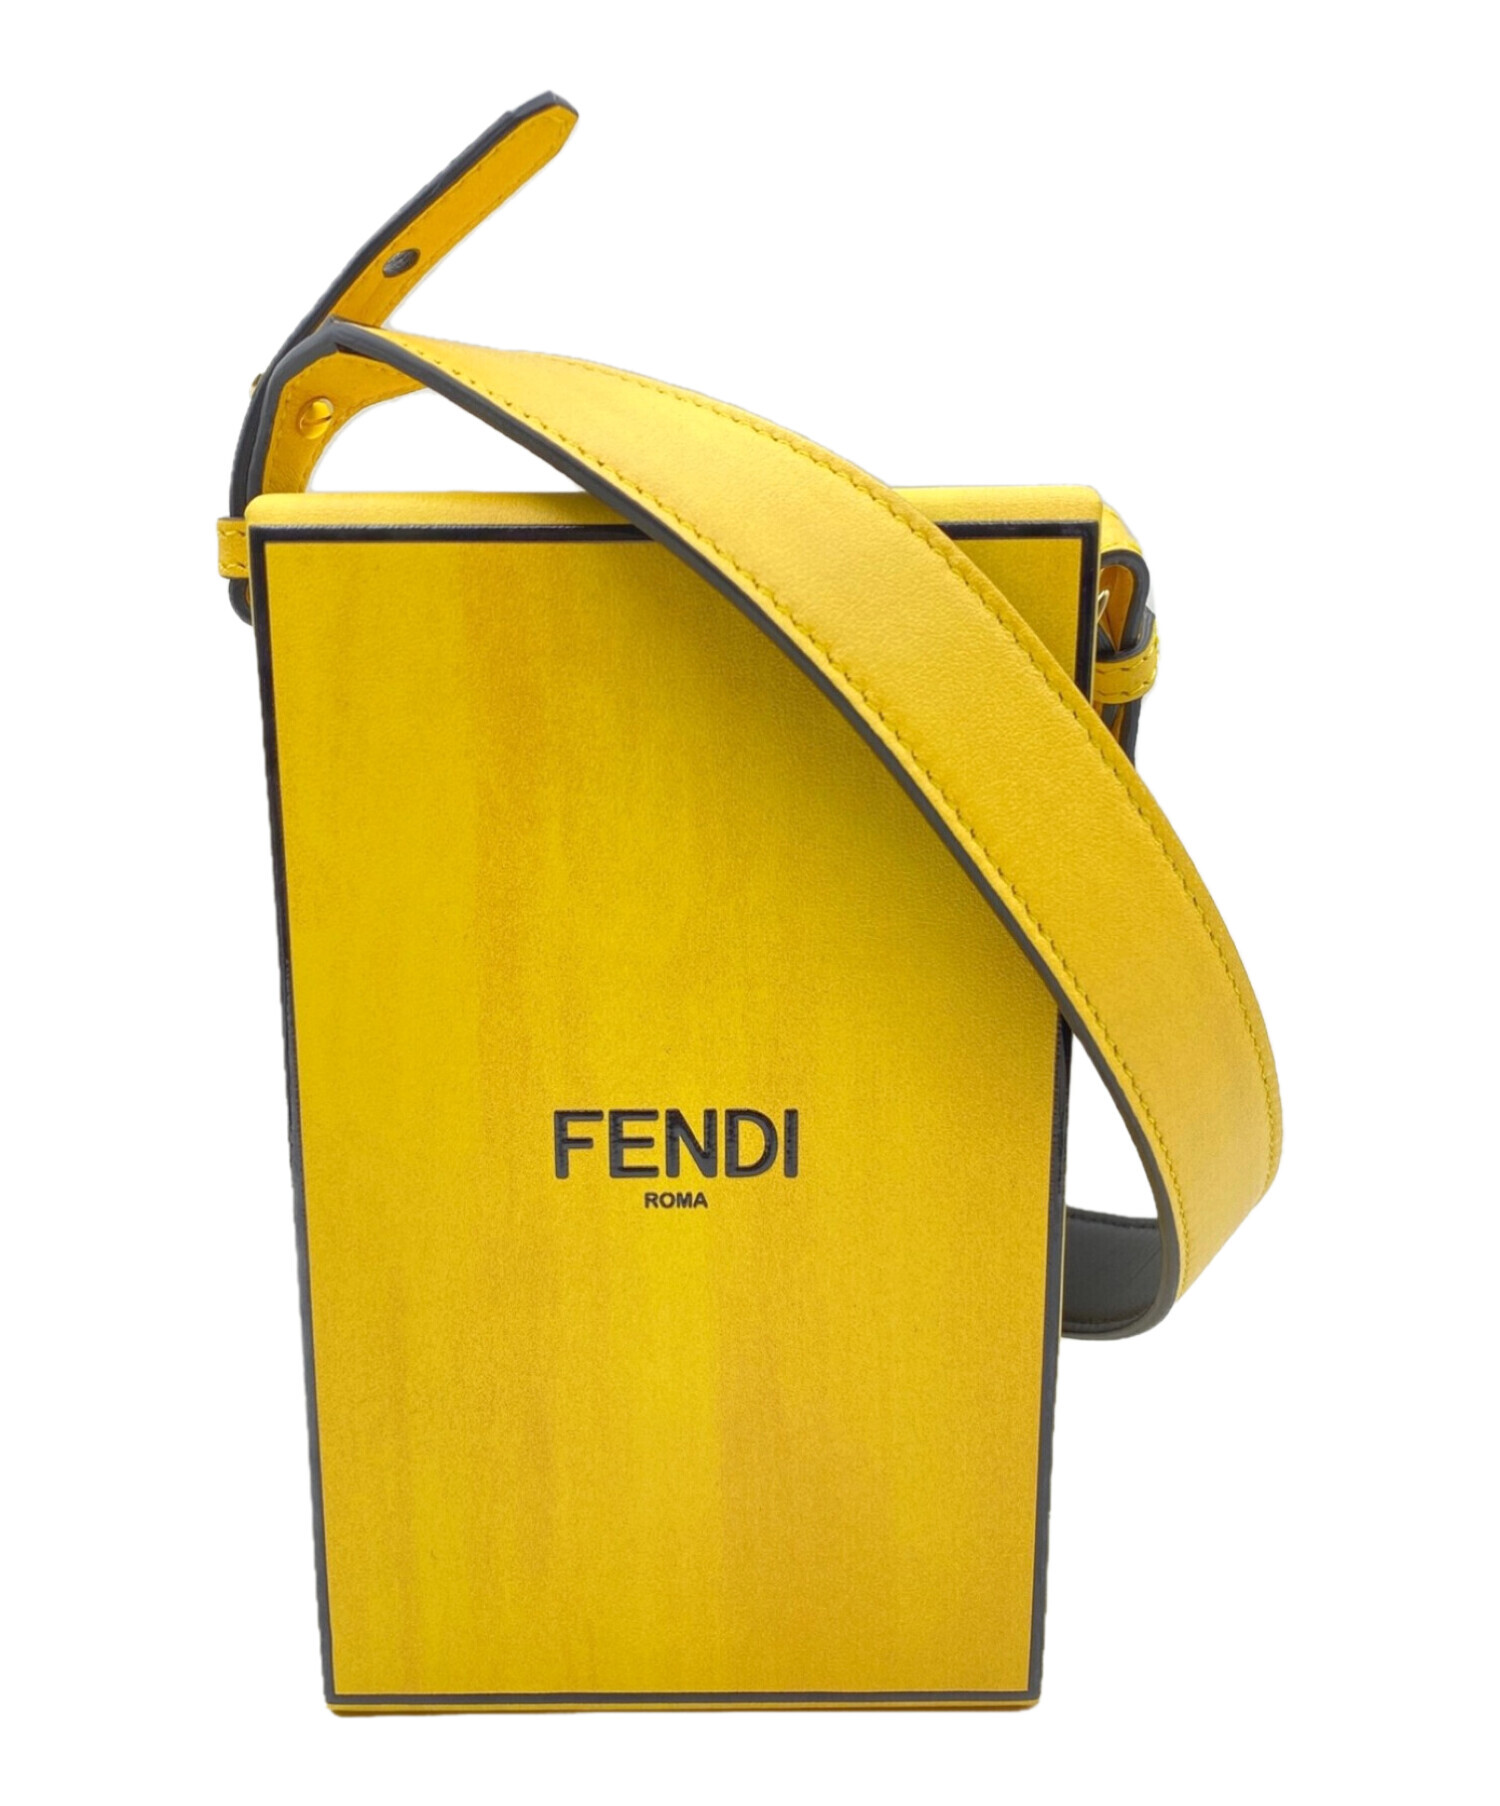 FENDI フェンディ バッグ（その他） - 黄